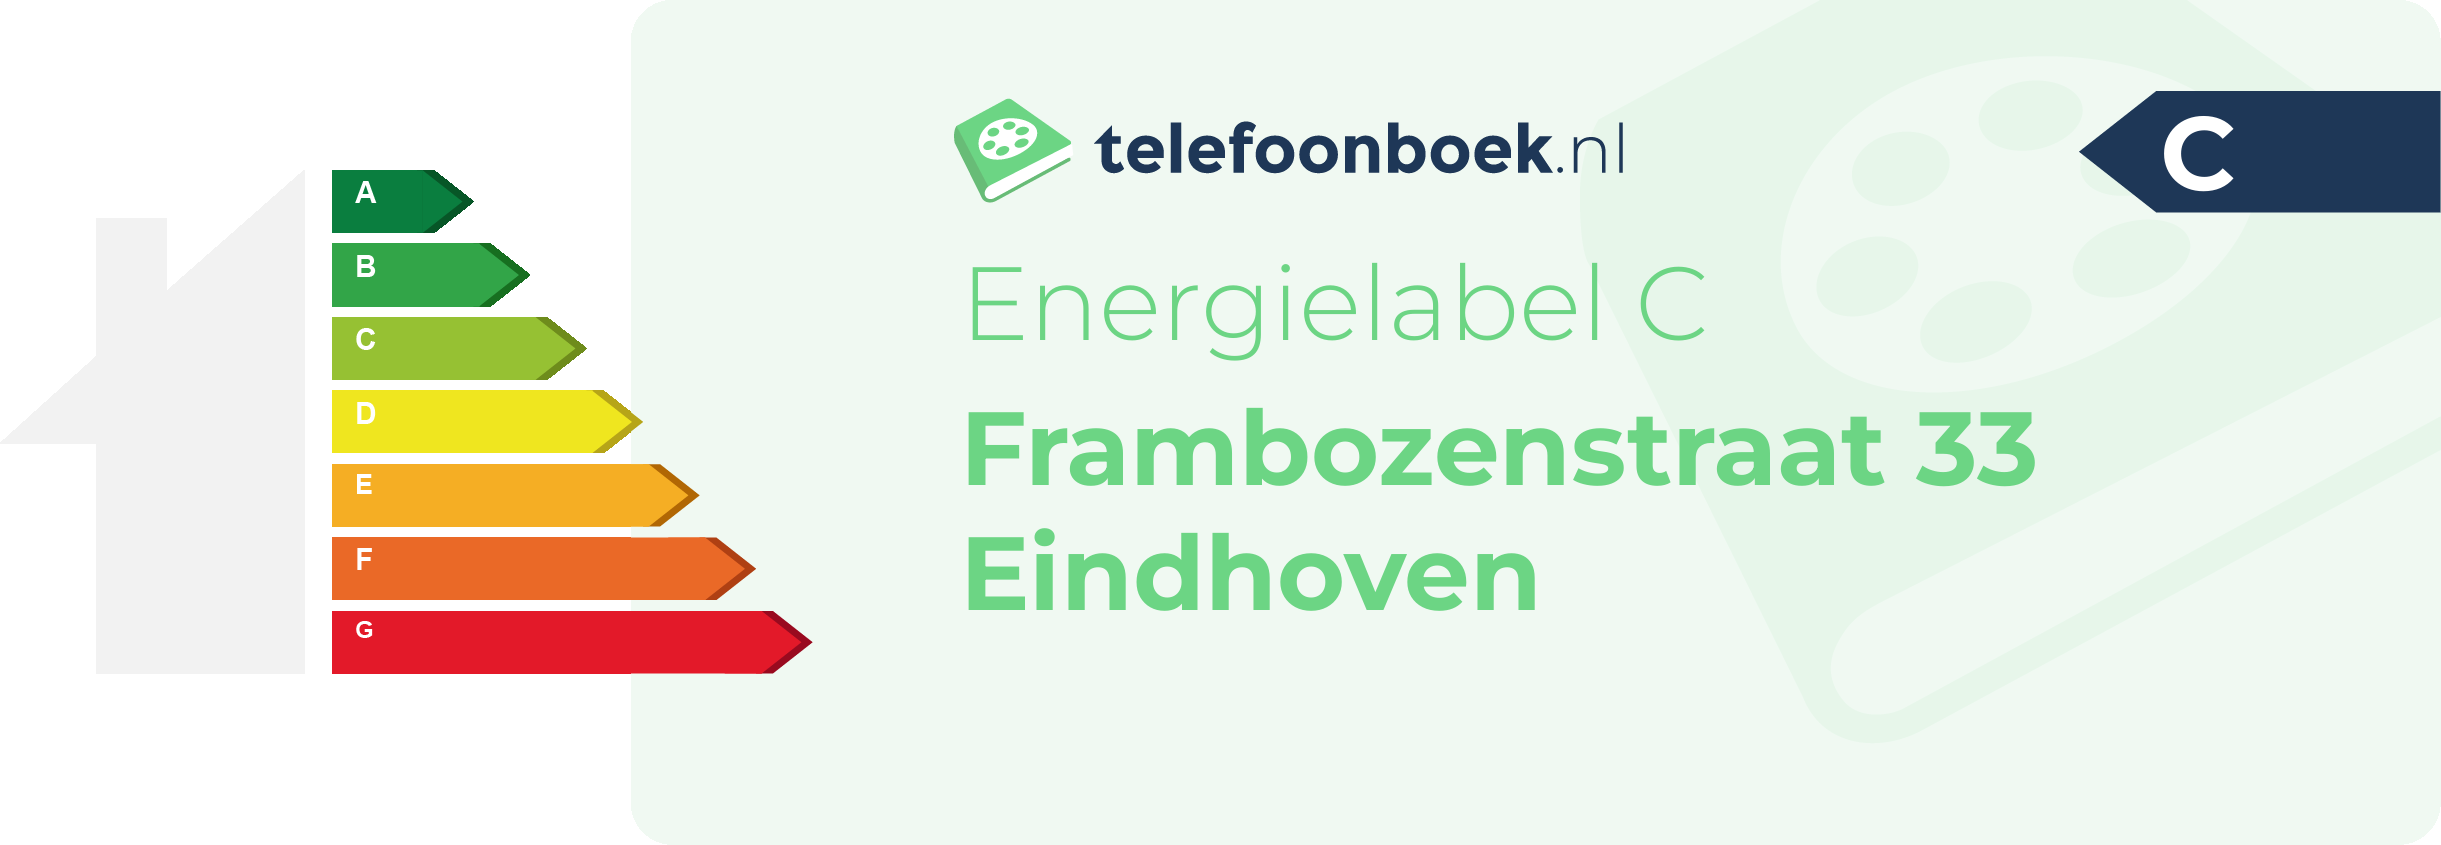 Energielabel Frambozenstraat 33 Eindhoven